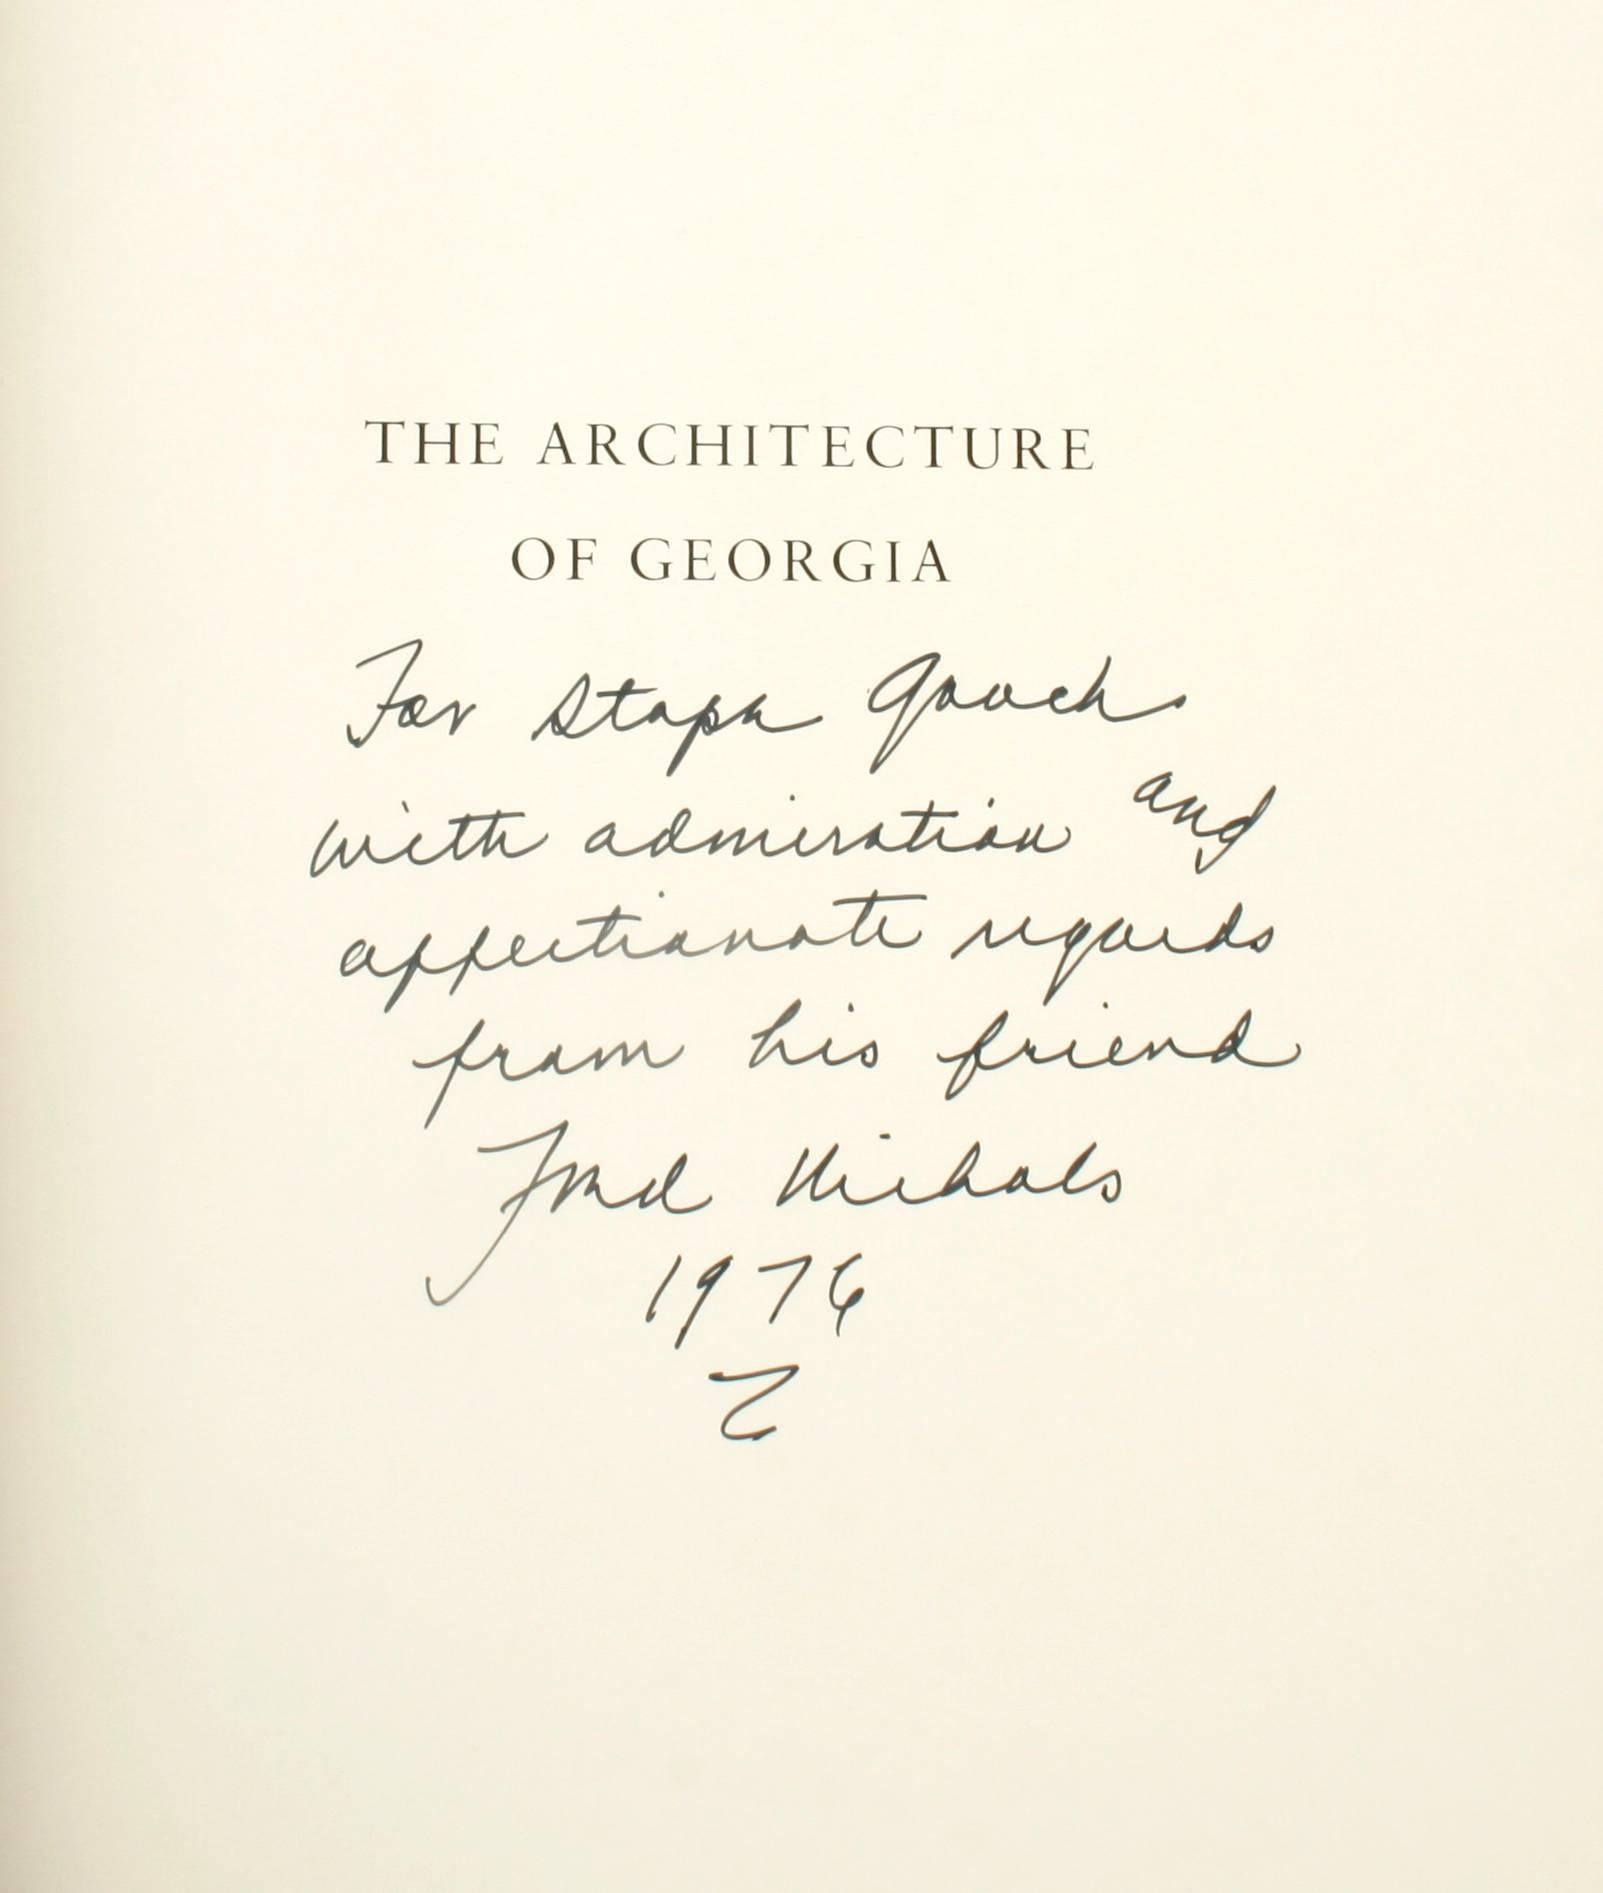 Die Architektur Georgiens von und signiert von Frederick Nichols. Signierte 1. Auflage. The Beehive Press, Savannah, 1976, Hardcover. 